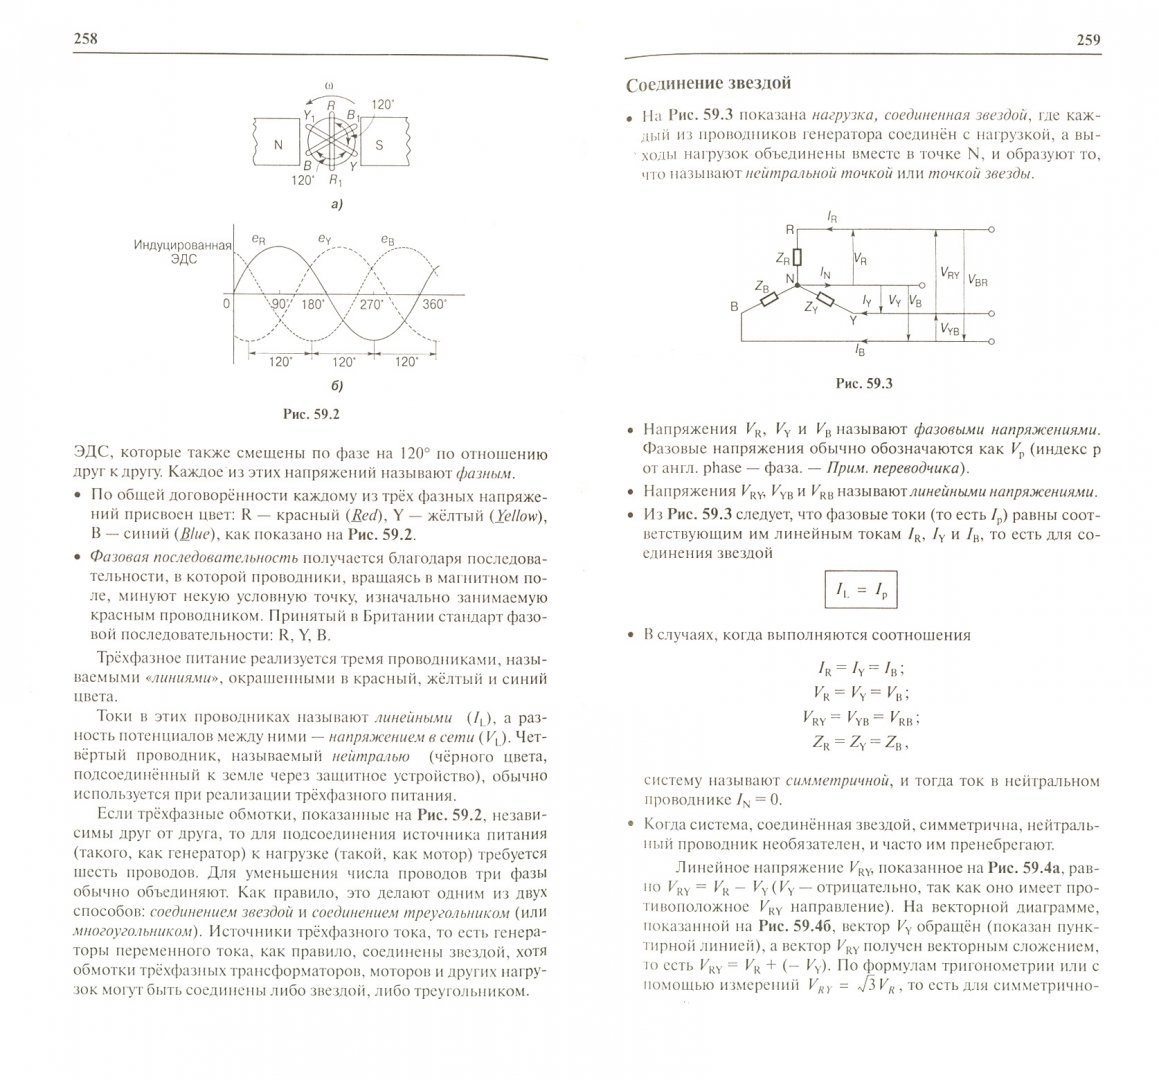 Иллюстрация 1 из 7 для Физика. От теории к практике: В 2-х книгах. Книга 2: Электричество, магнетизм - Джон Берд | Лабиринт - книги. Источник: Лабиринт